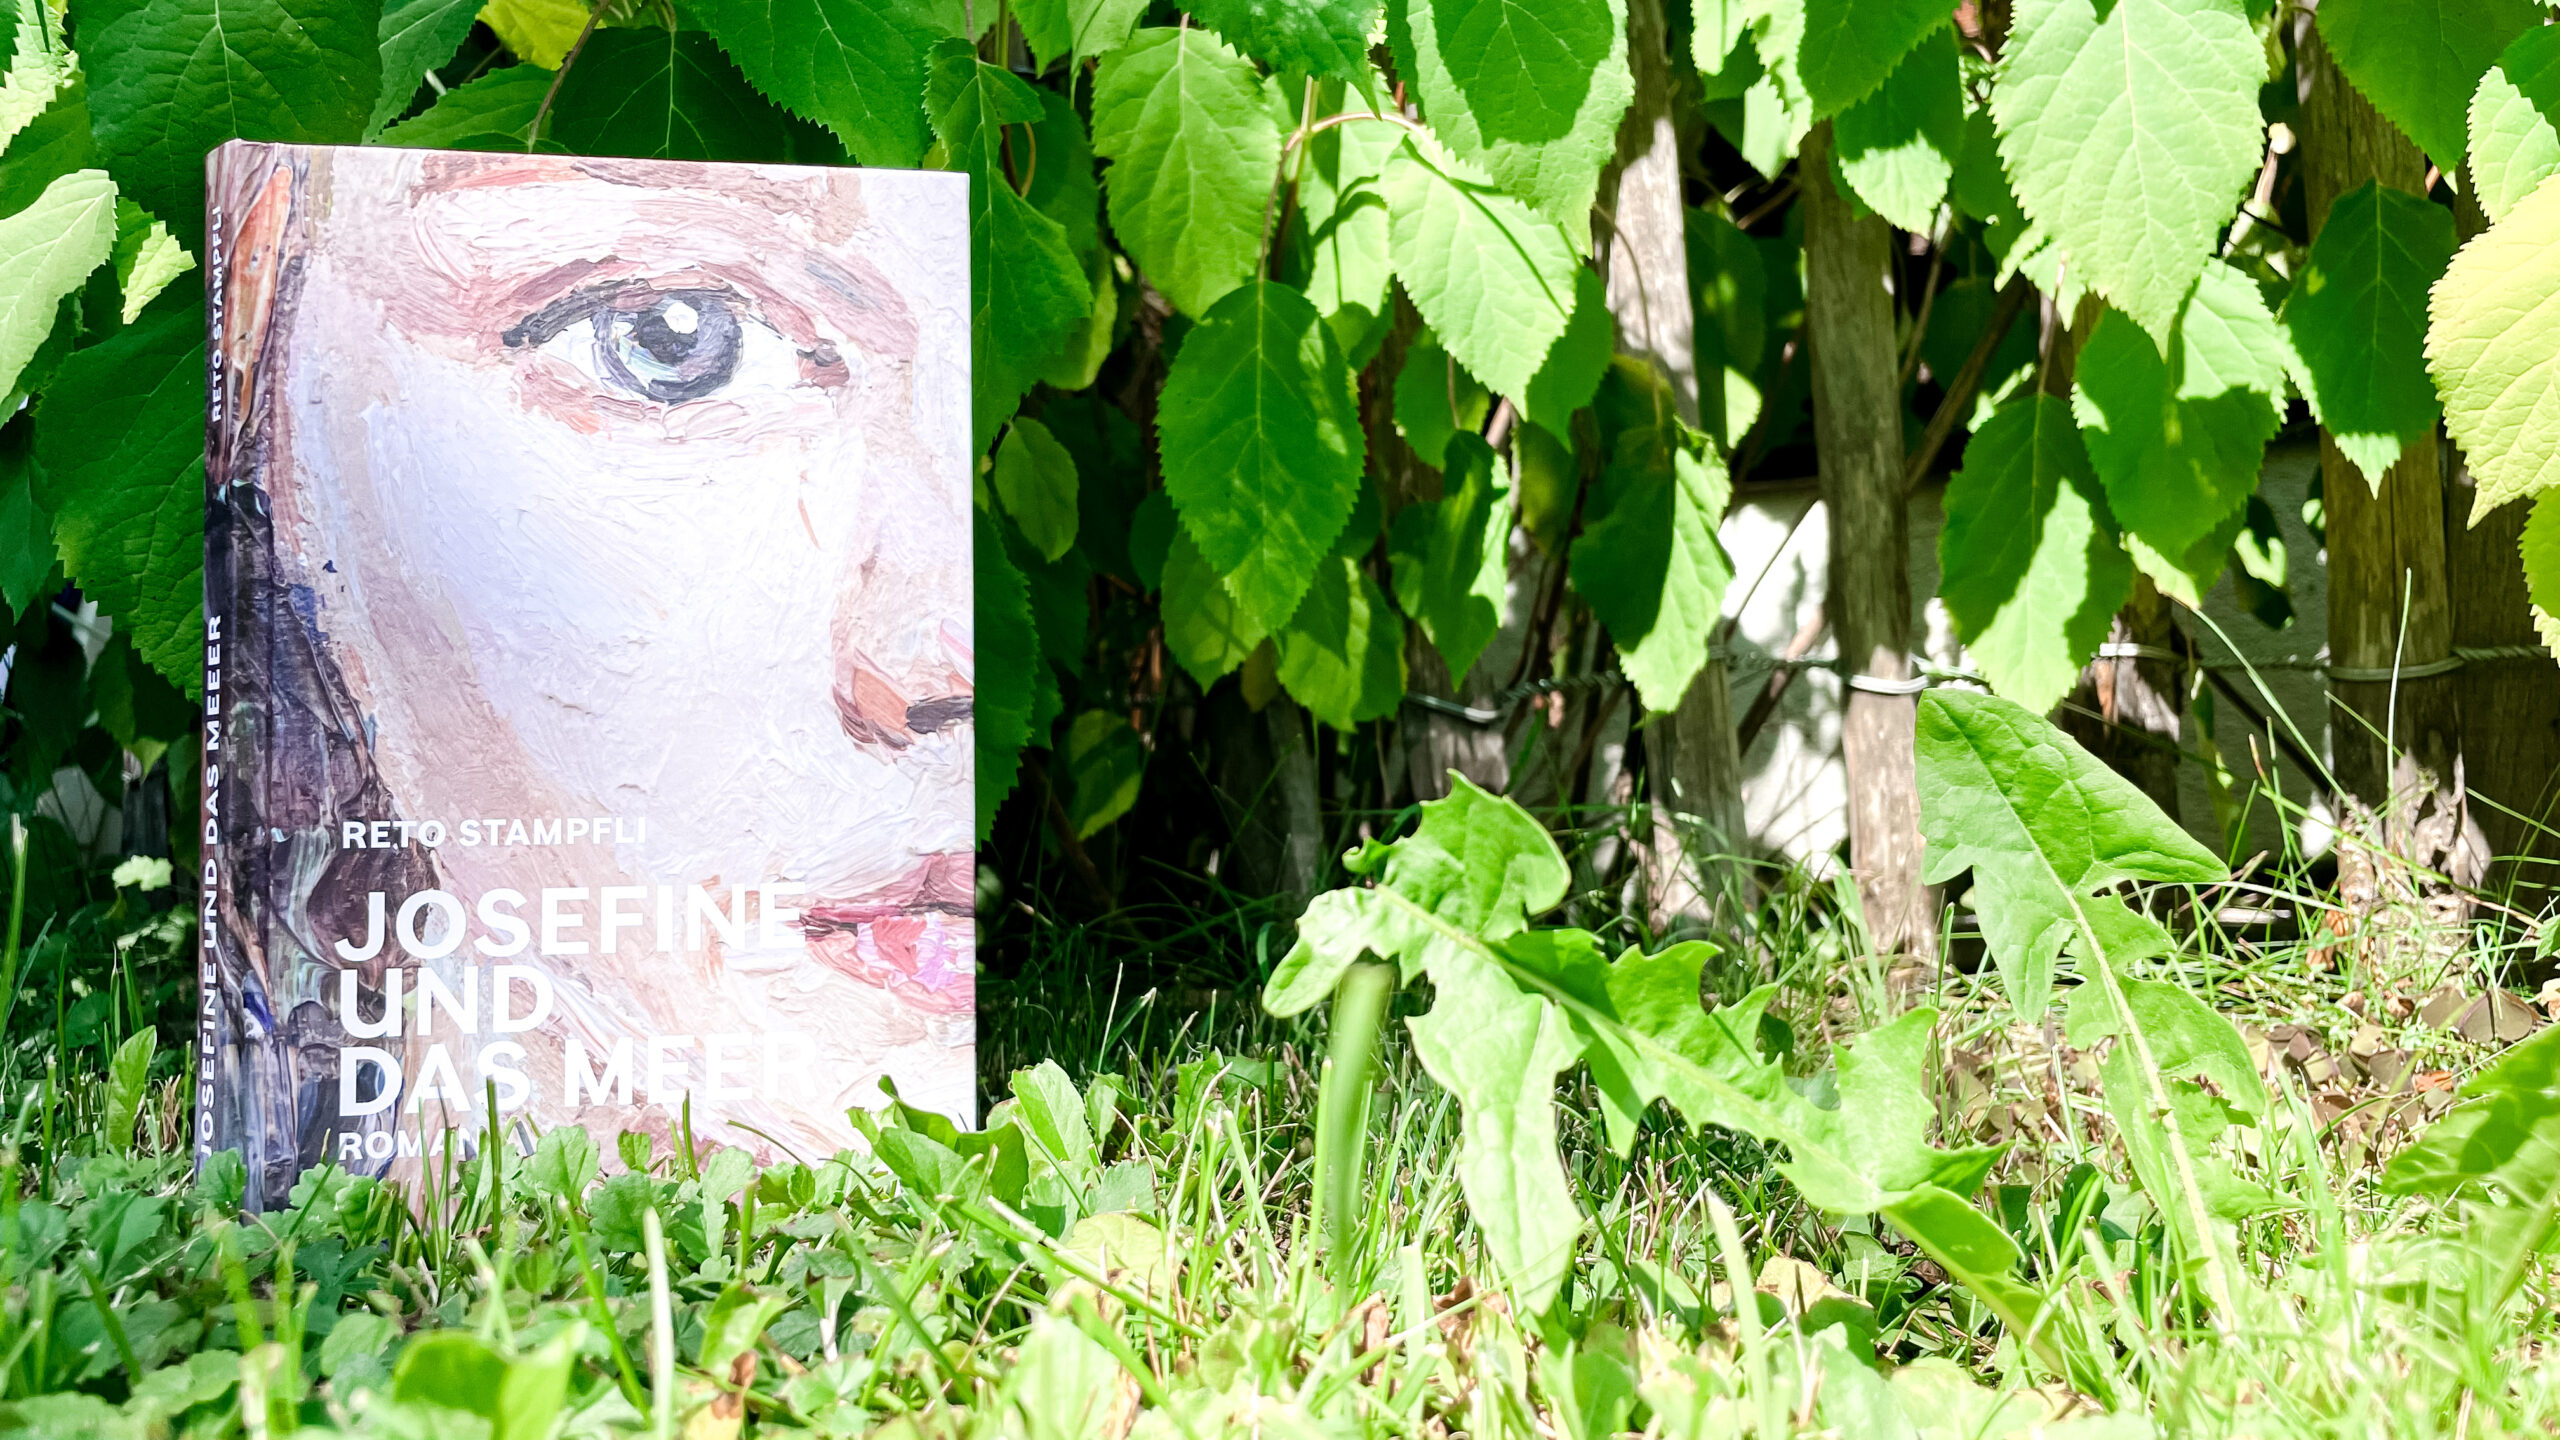 Das Buch «Josefine und das Meer» von Reto Stämpfli steht im Rasen vor einem Holzzaun, zwischen deren Latten Hortensienblätter hervorlugen.